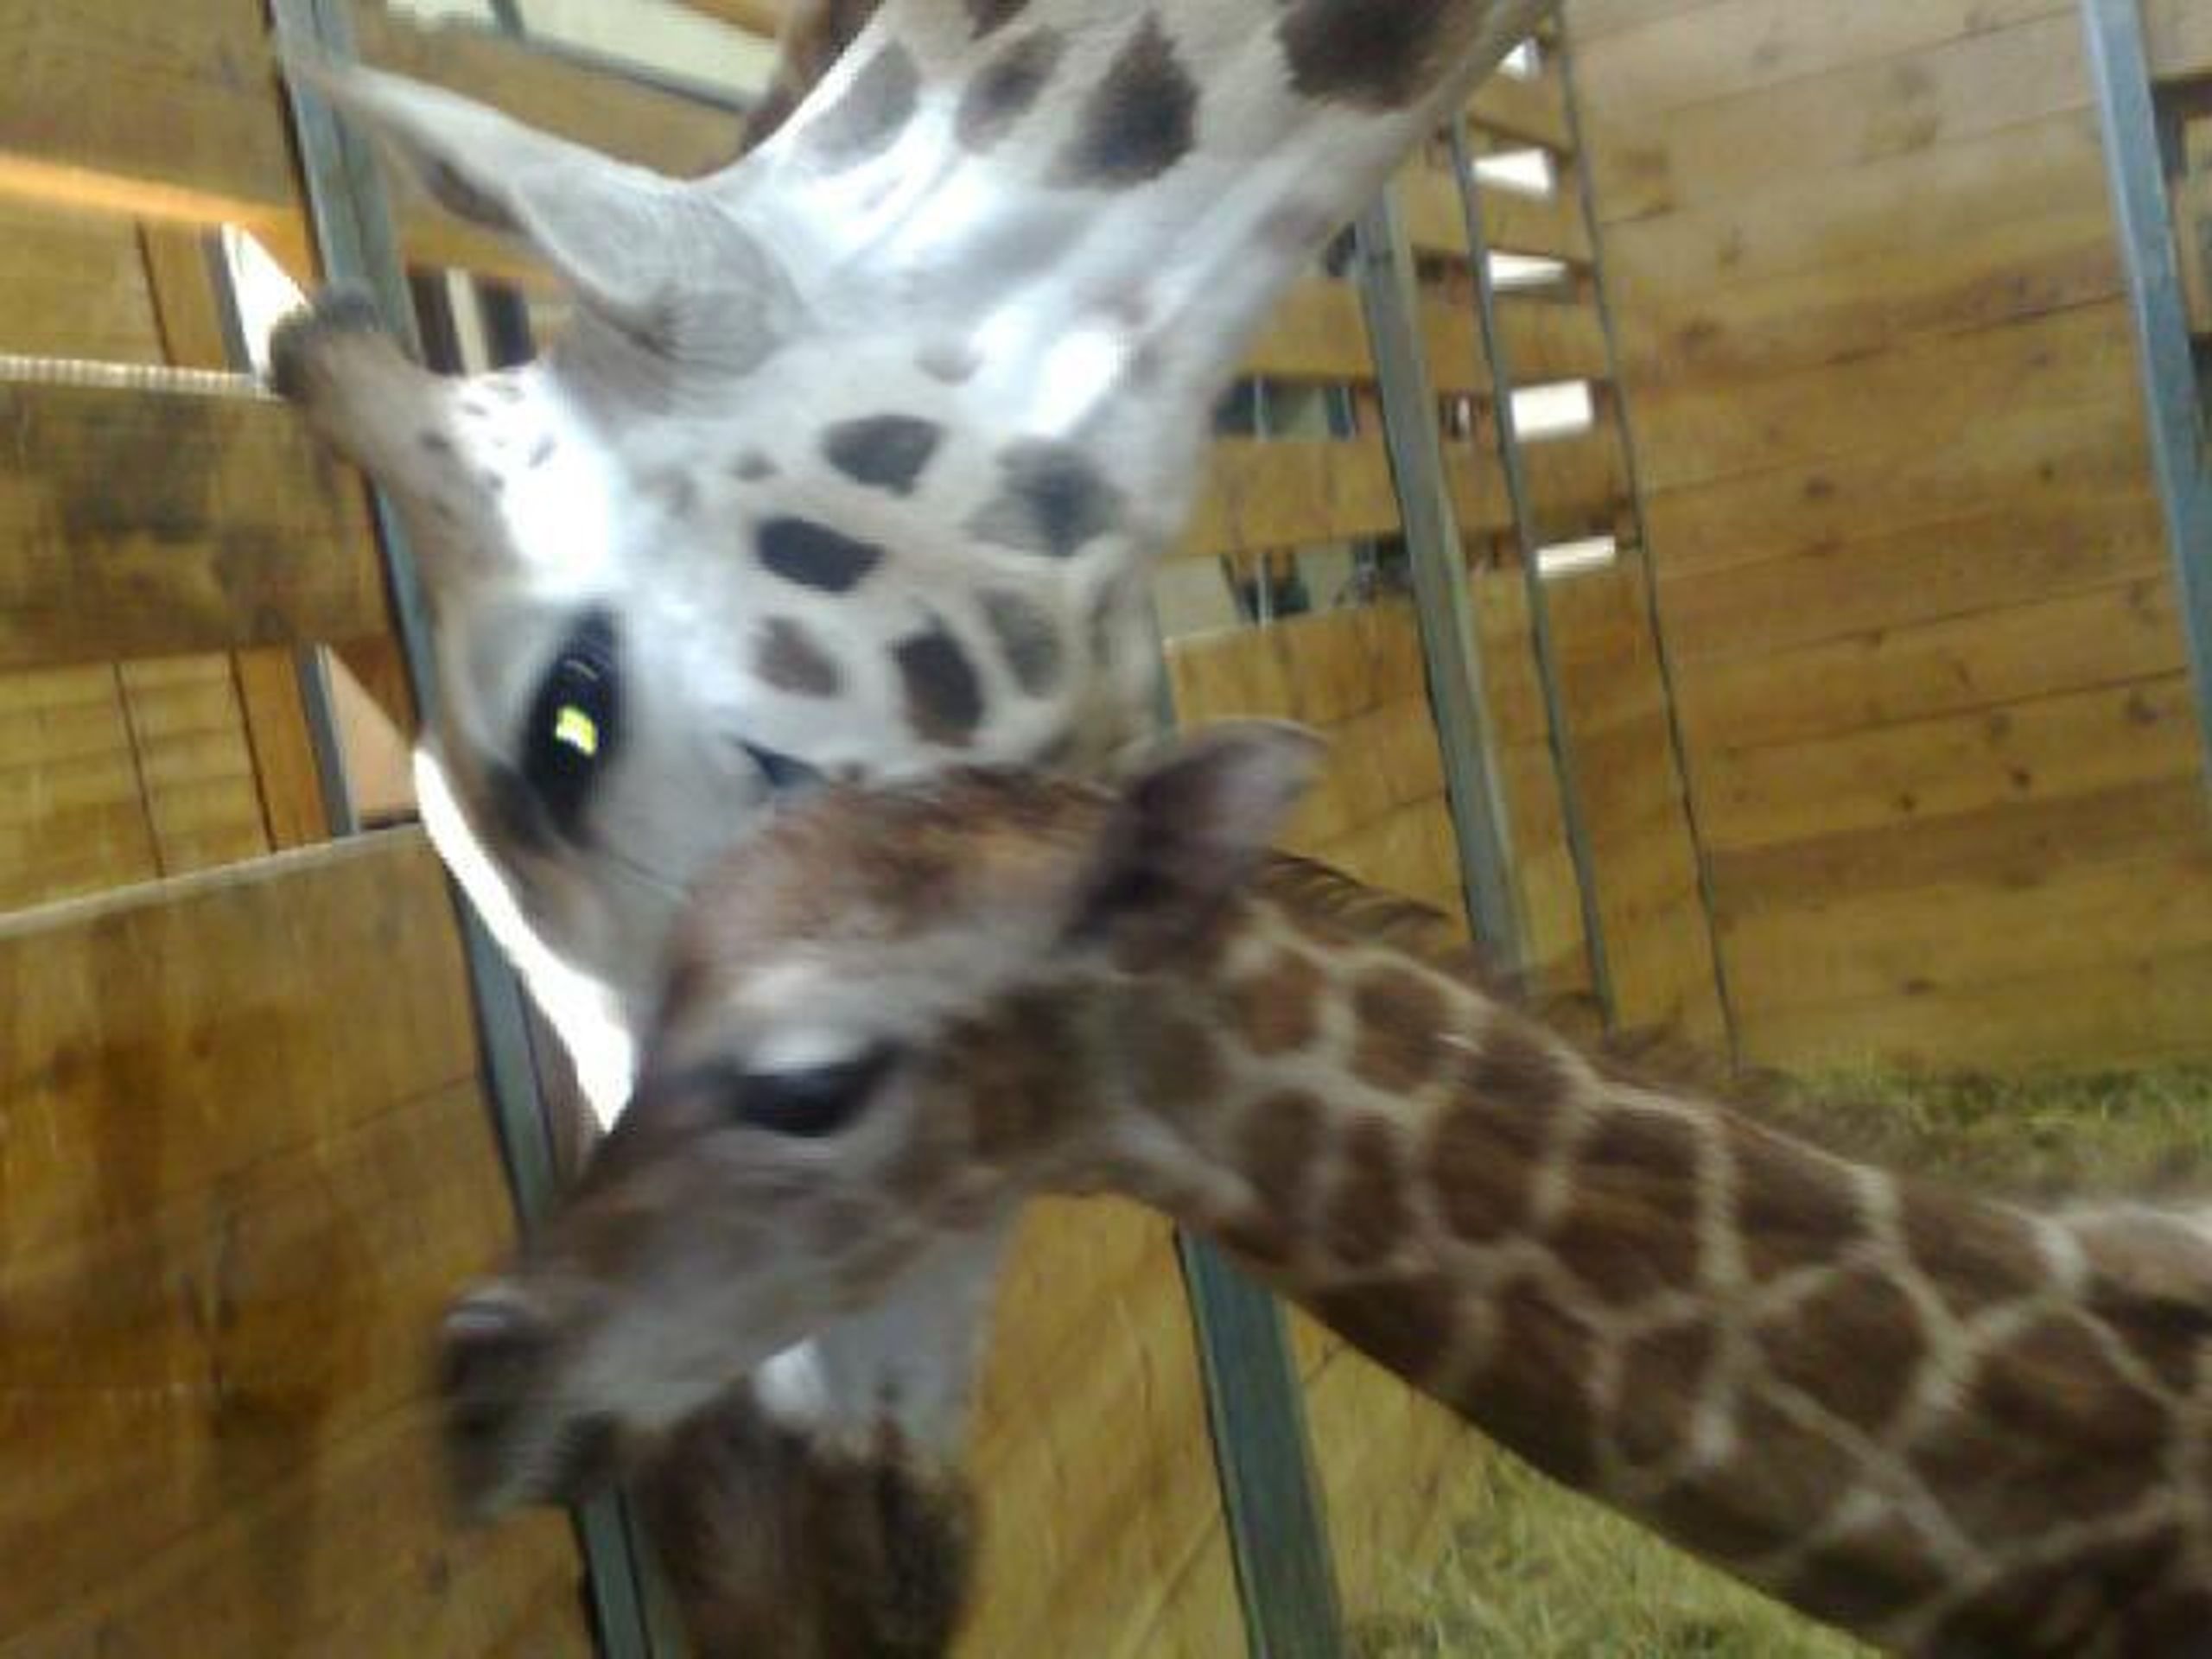 Porod žirafy Elišky - FOTOGALERIE: Porod žirafy Elišky v pražské zoo (2/10)